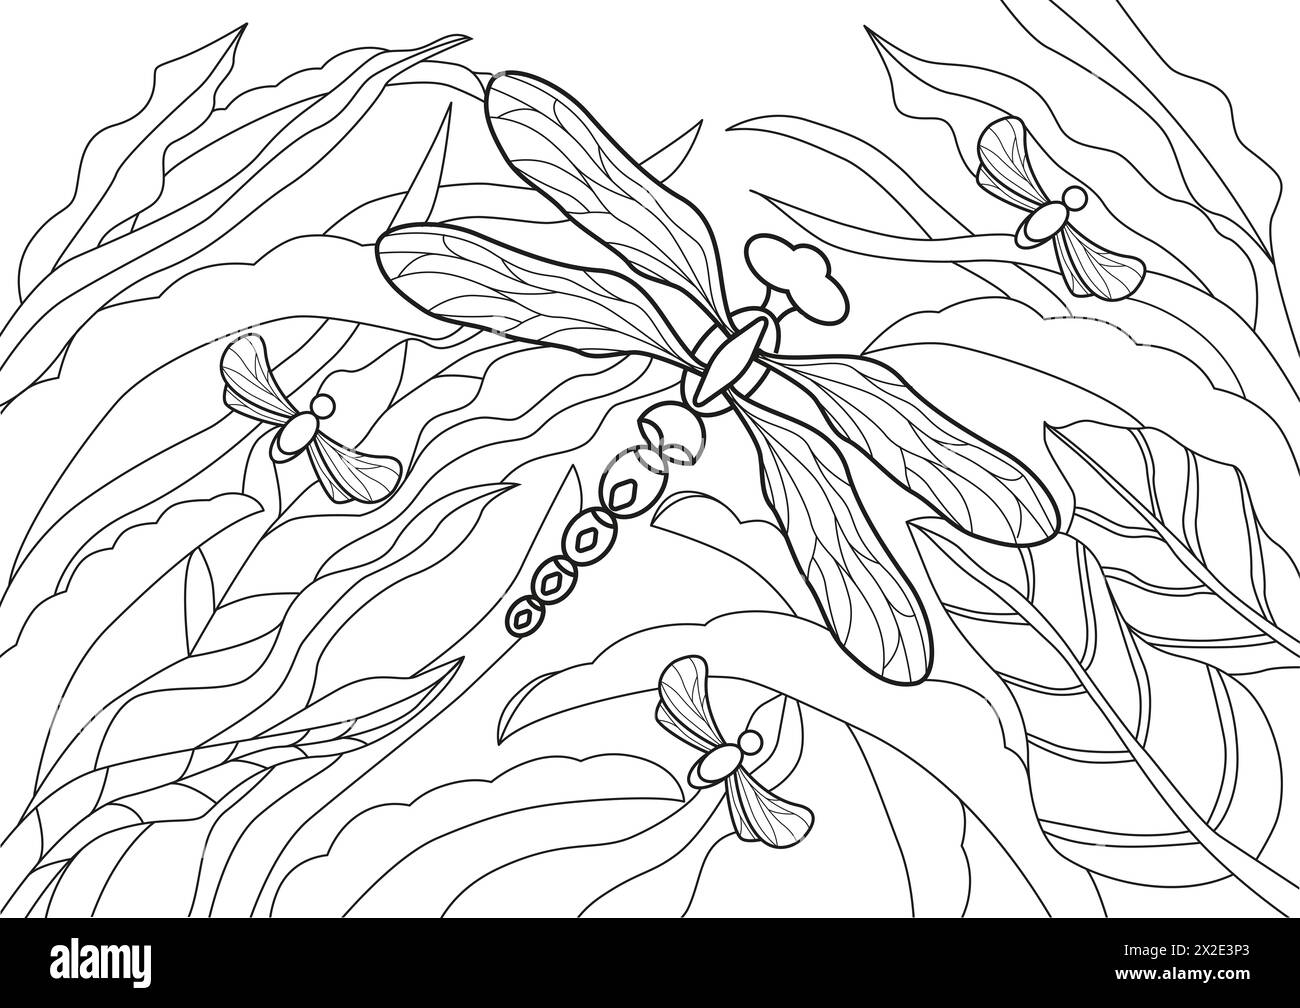 Pagina colorata Flying libellfly disegnata a mano per rilassamento e sollievo dallo stress. Libro da colorare per adulti con scarabocchi ed elementi di design. Foto Stock